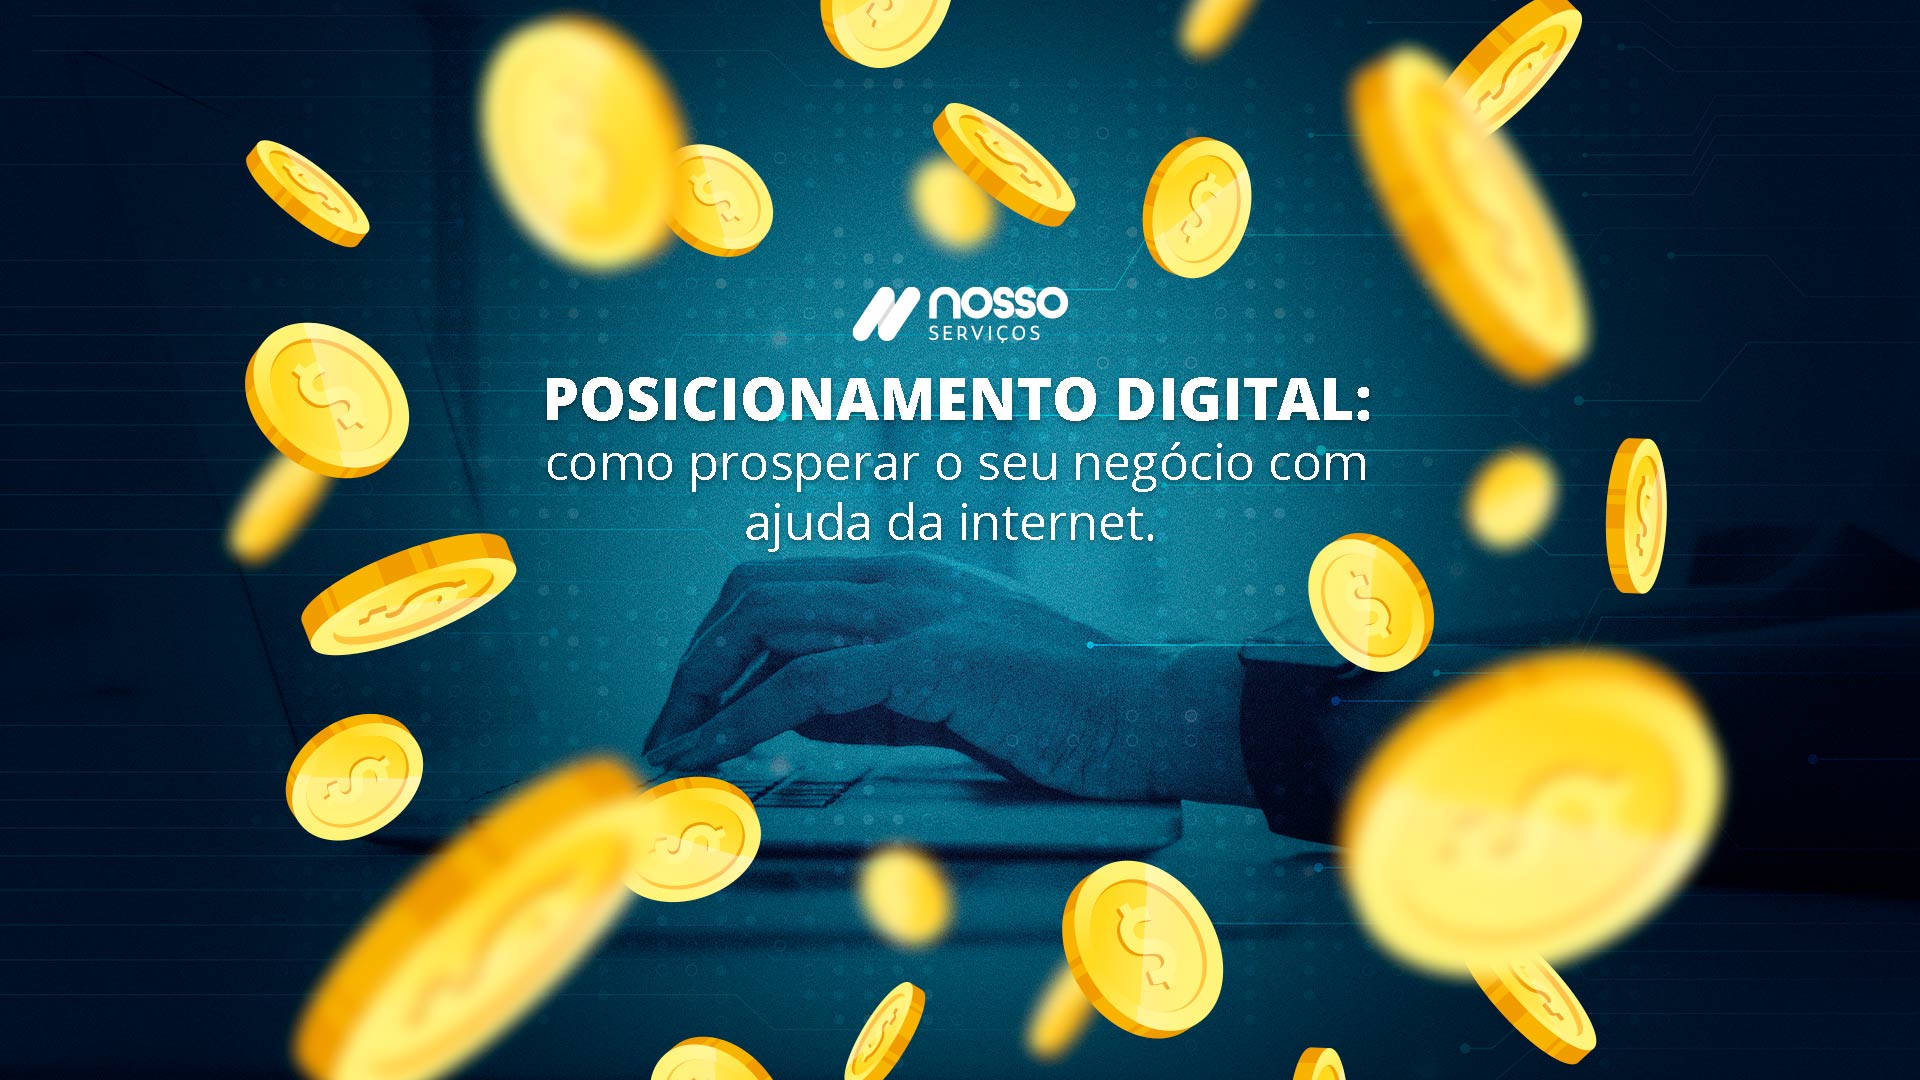 Banner com manipulação de moedas "caindo" sobre a tela. Ao fundo, aparece a frase: "Posicionamento digital: Como prosperar o seu negócio com ajuda da internet".